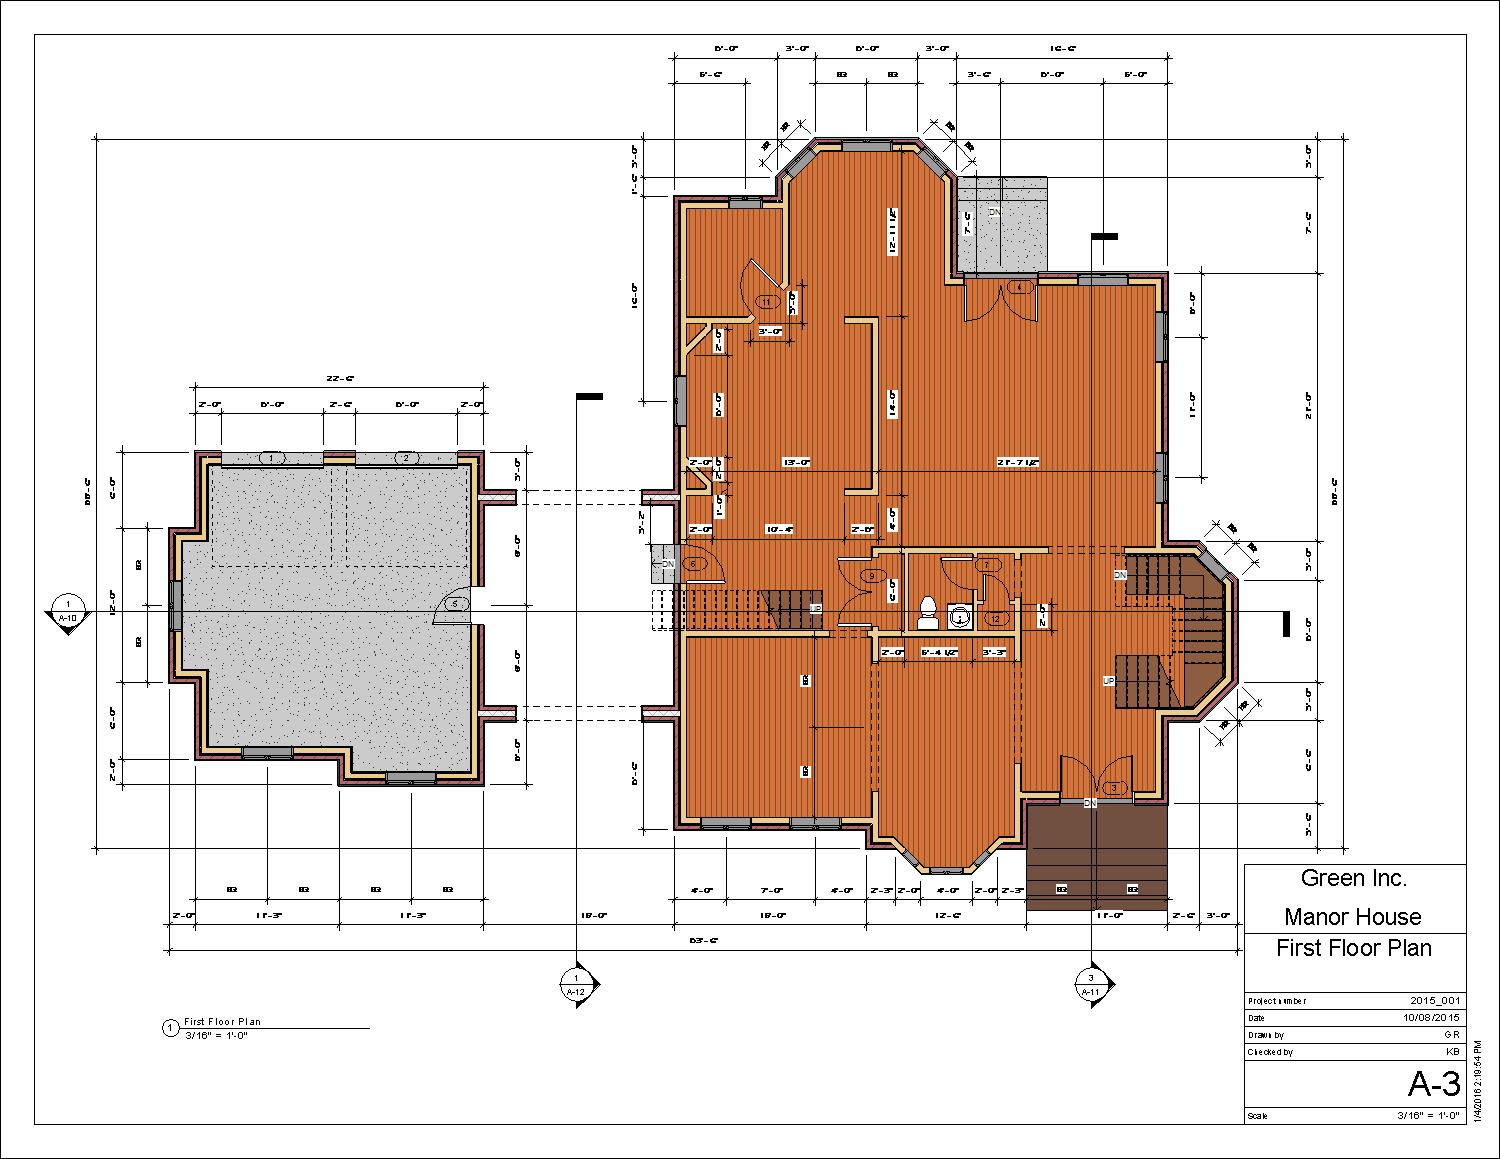 Manor House_GR - Sheet - A-3 - First Floor Plan.jpg